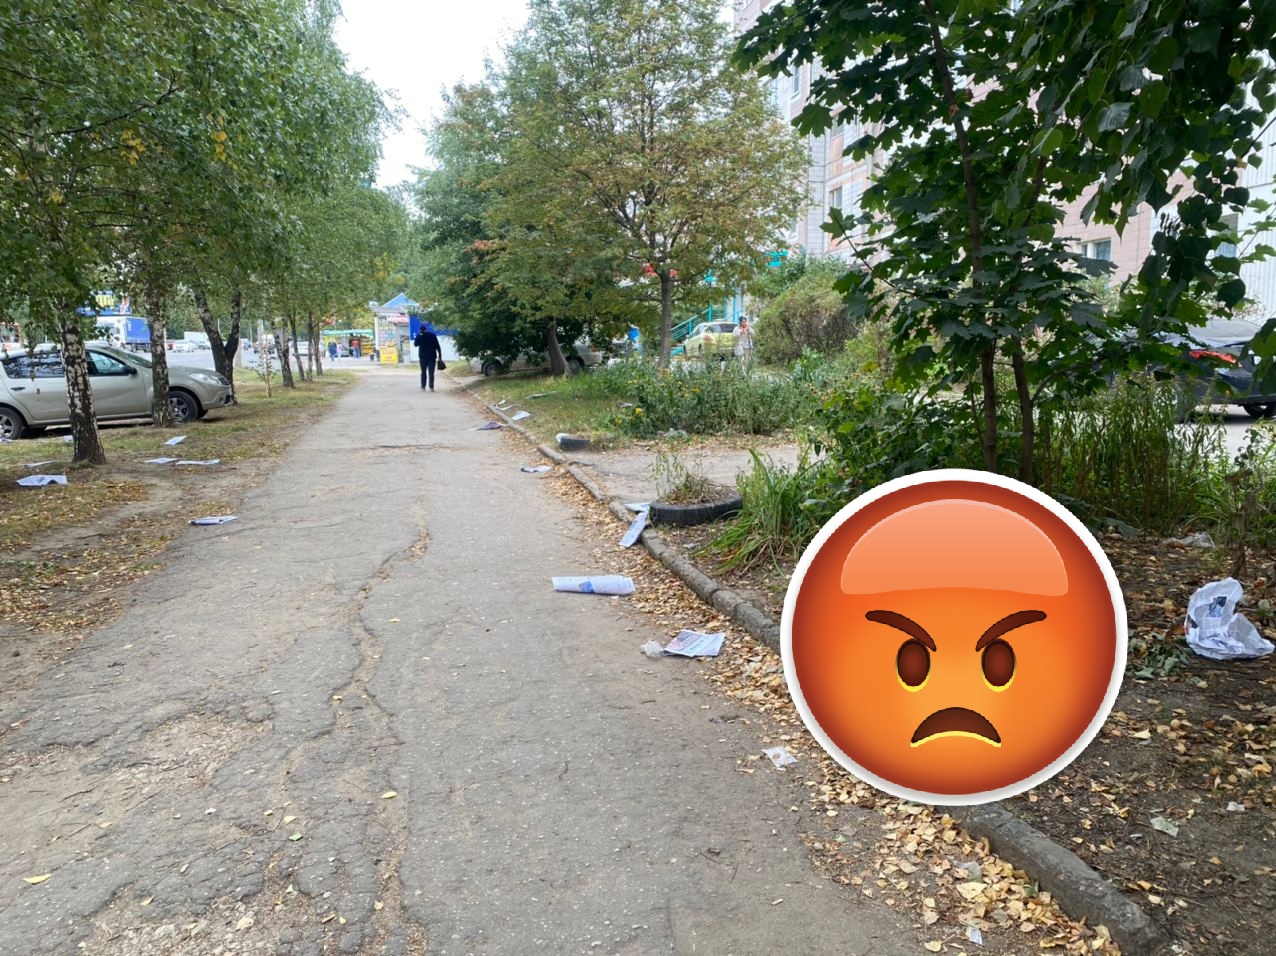 Хотел заступиться за Рязань, а в итоге замусорил: на улице Новоселов разбросали агитационные газеты